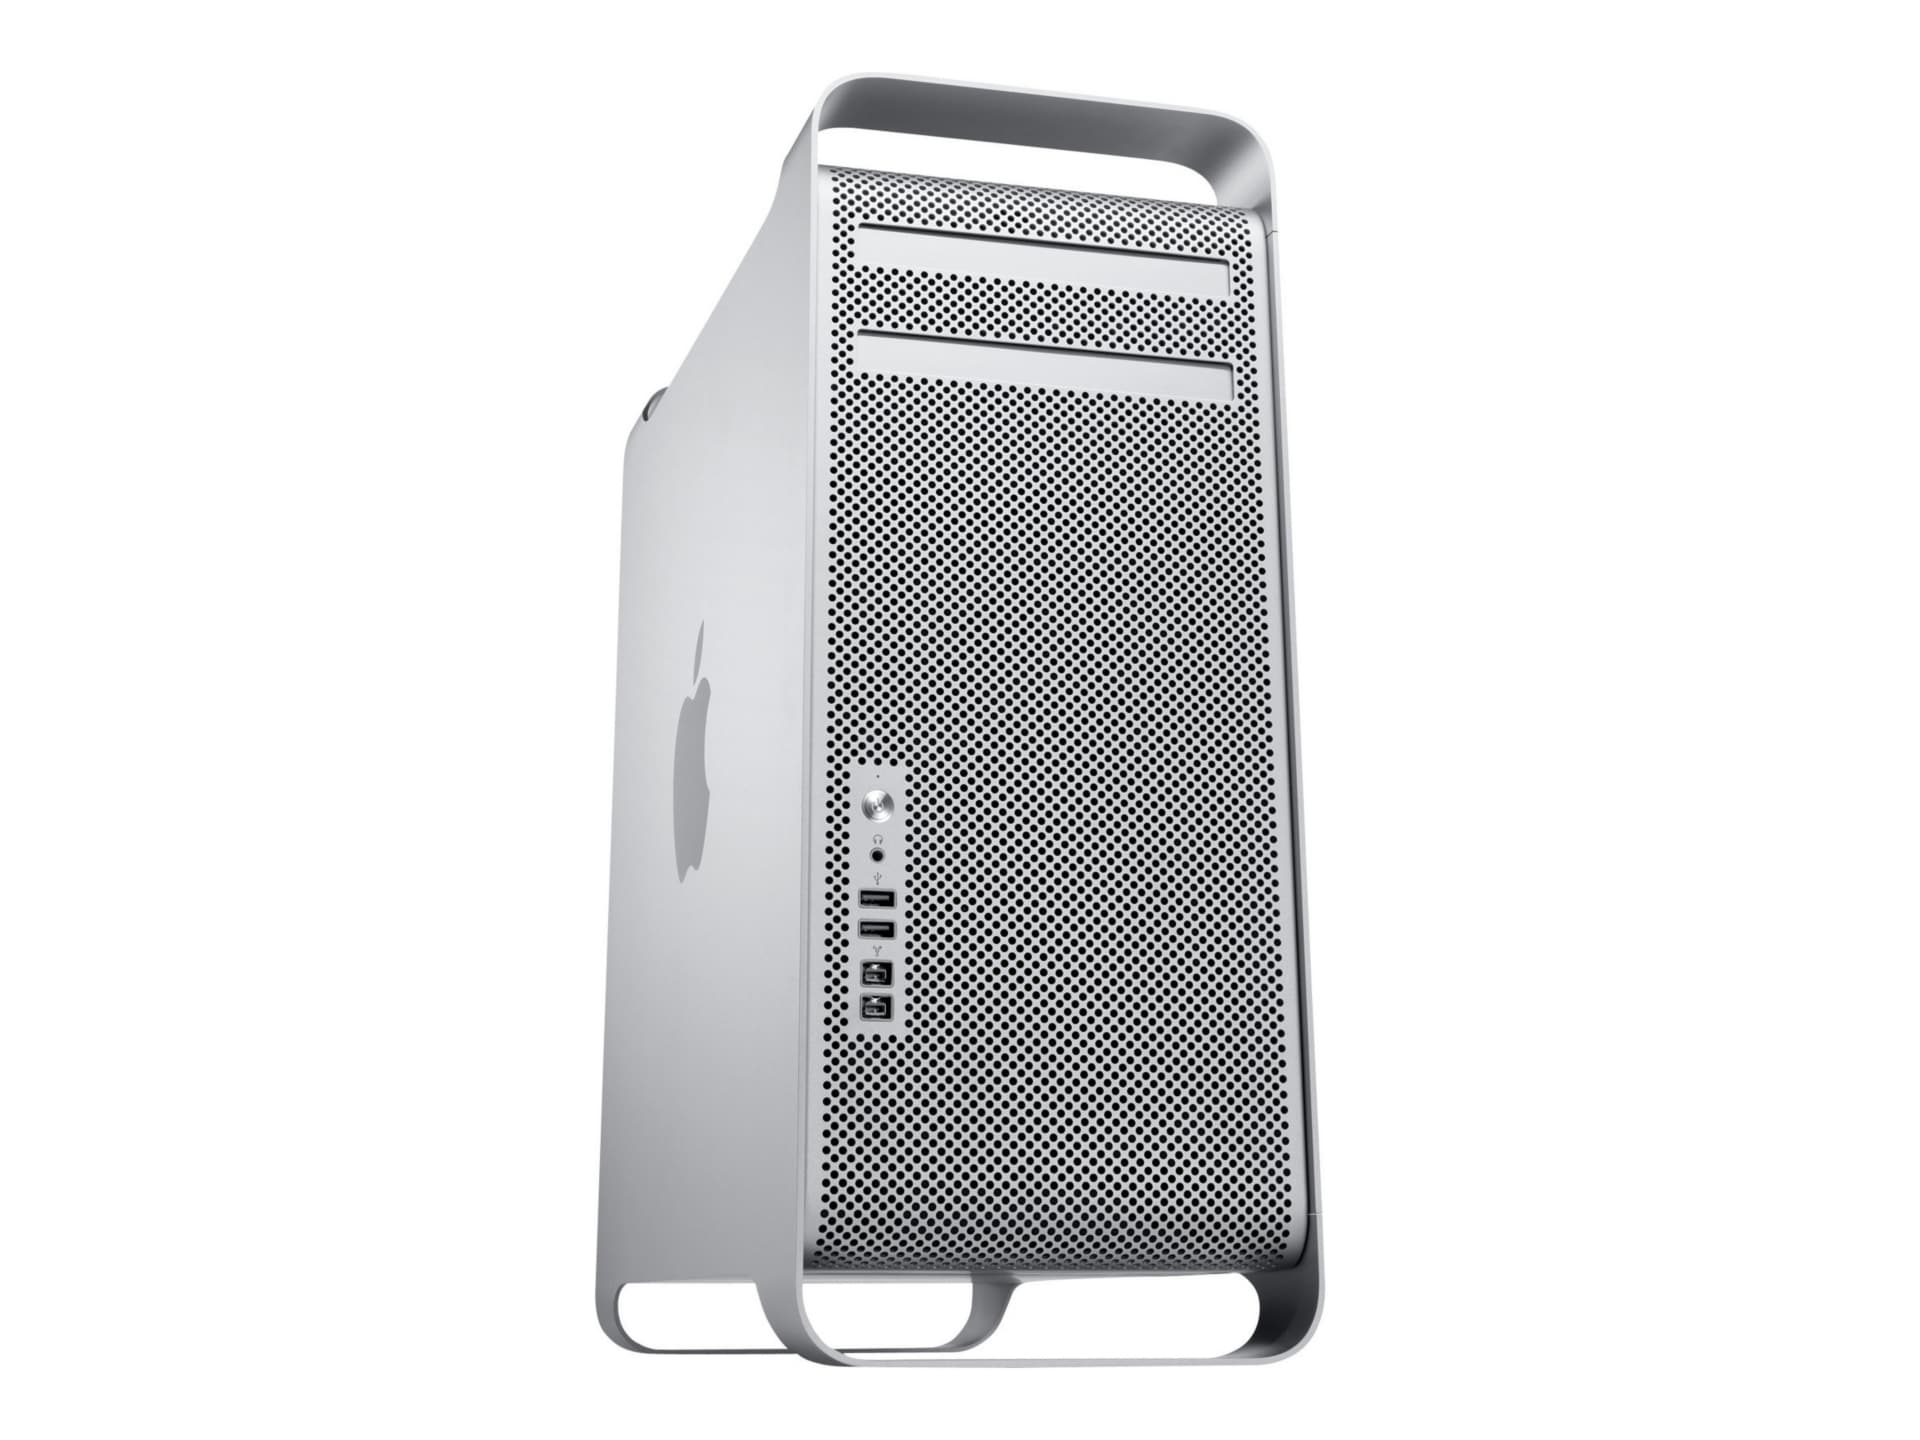 Apple Mac Pro - tower - Xeon 2.8 GHz - 2 GB - HDD 320 GB - US